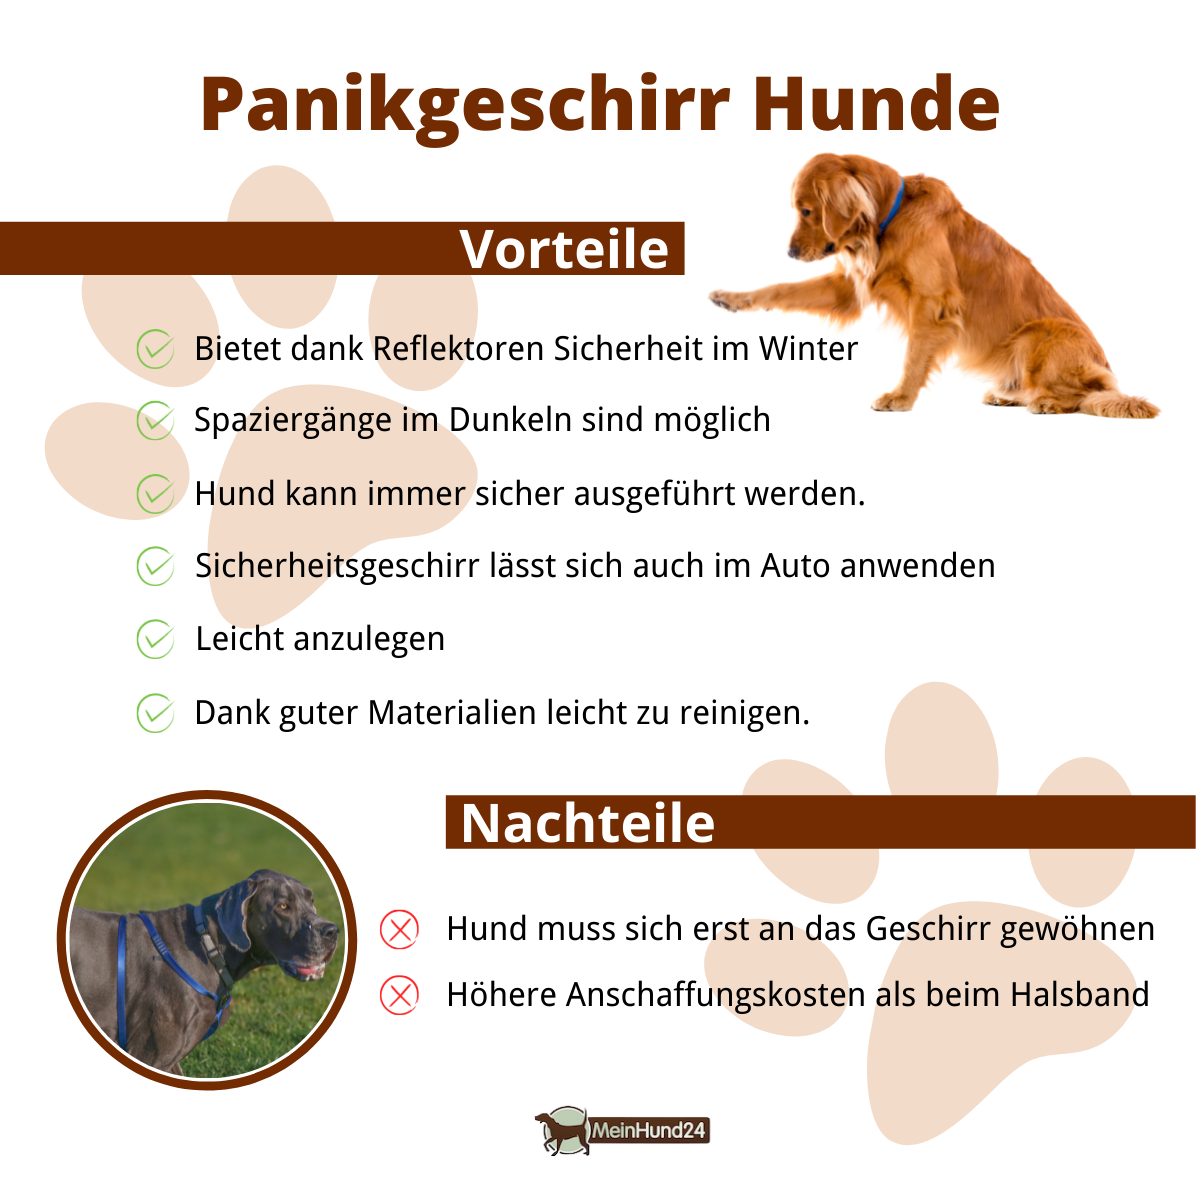 Panikgeschirr Hunde Vorteile und Nachteile Infografik